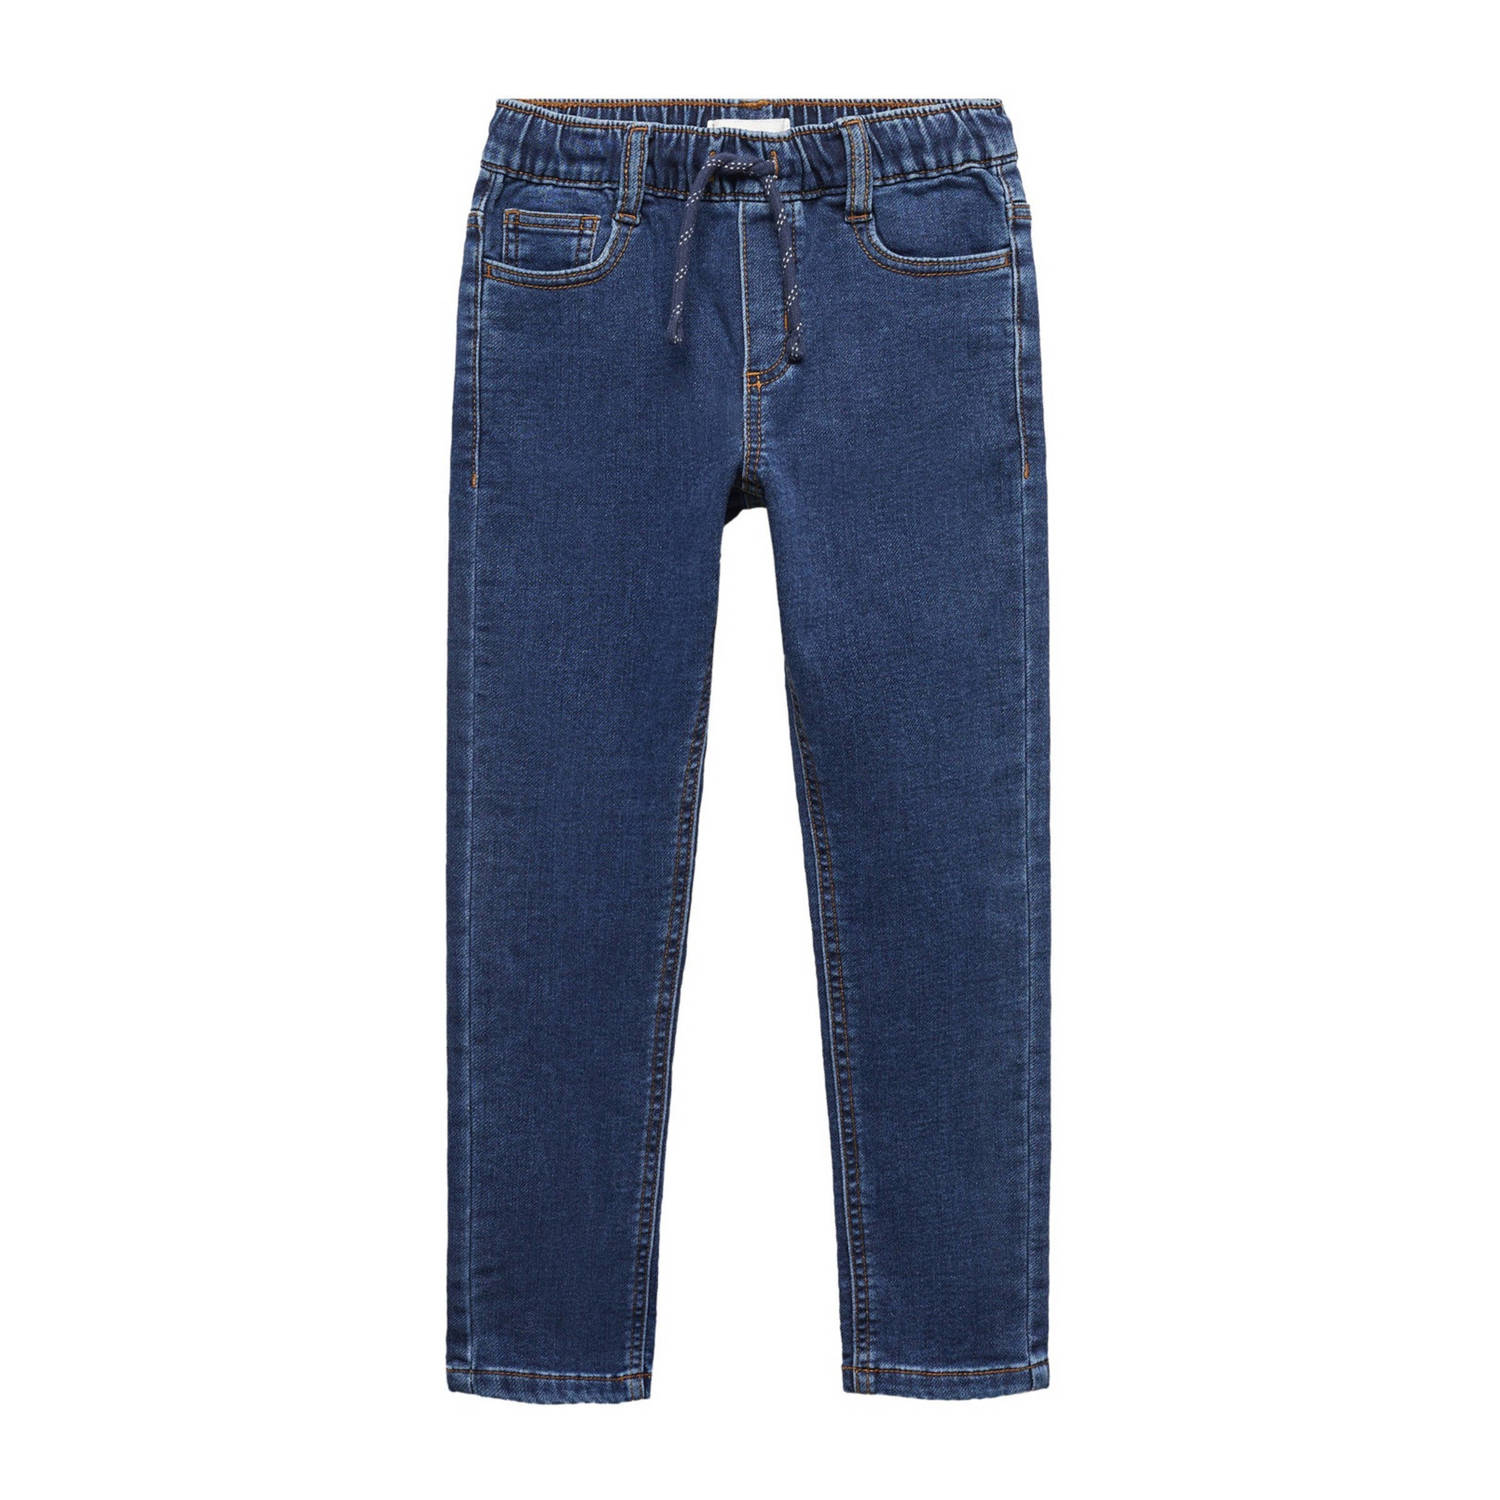 Mango Kids slim fit jeans changeant blauw Broek Jongens Stretchdenim Effen 116